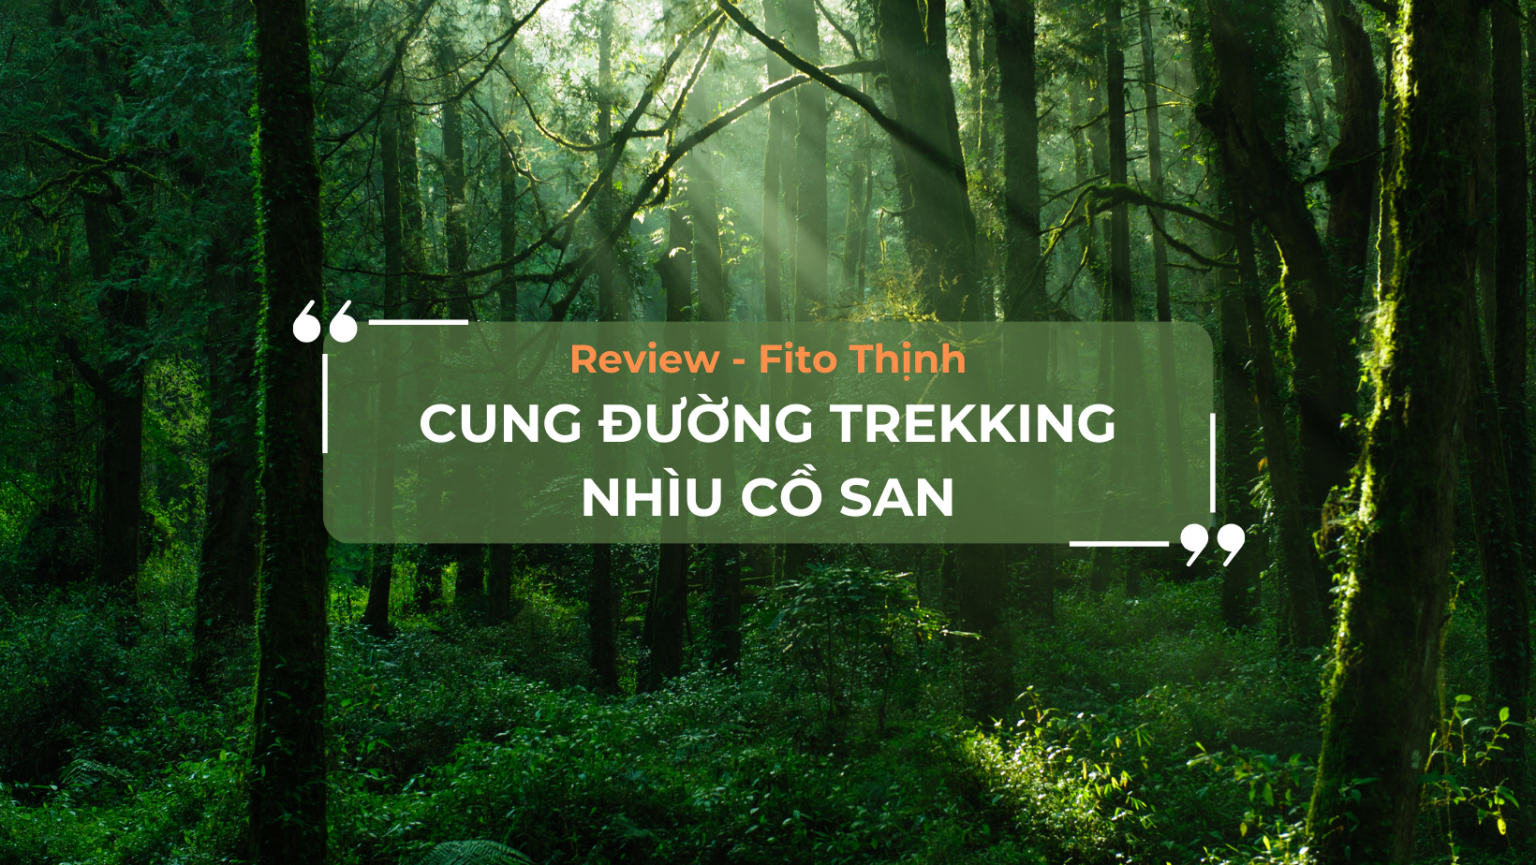 Review cung đường Trekking Nhìu Cồ San cùng Fito Thịnh